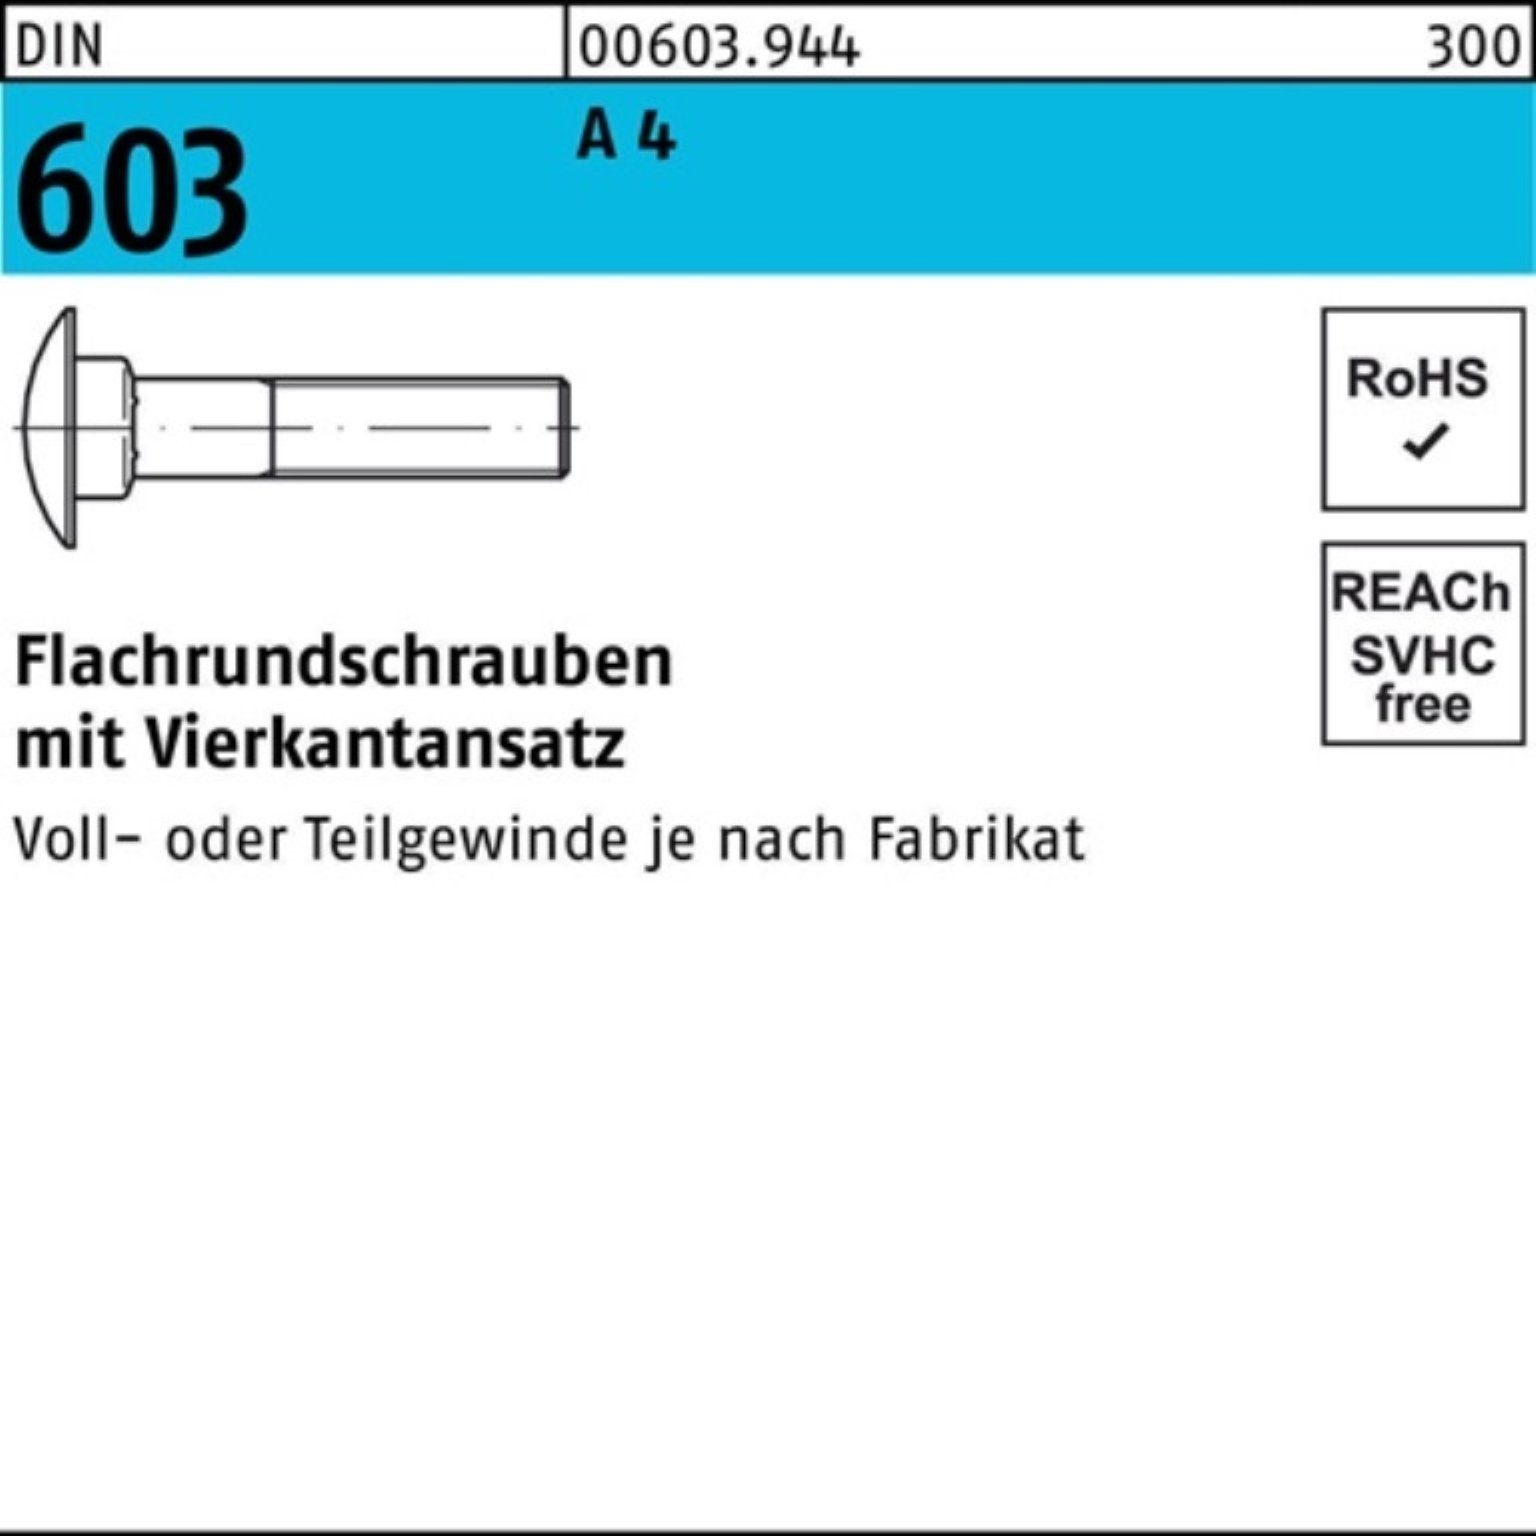 Reyher Schraube 100er A 603 DIN Flachrundschraube 1 Pack 60 M16x Vierkantansatz 4 Stü